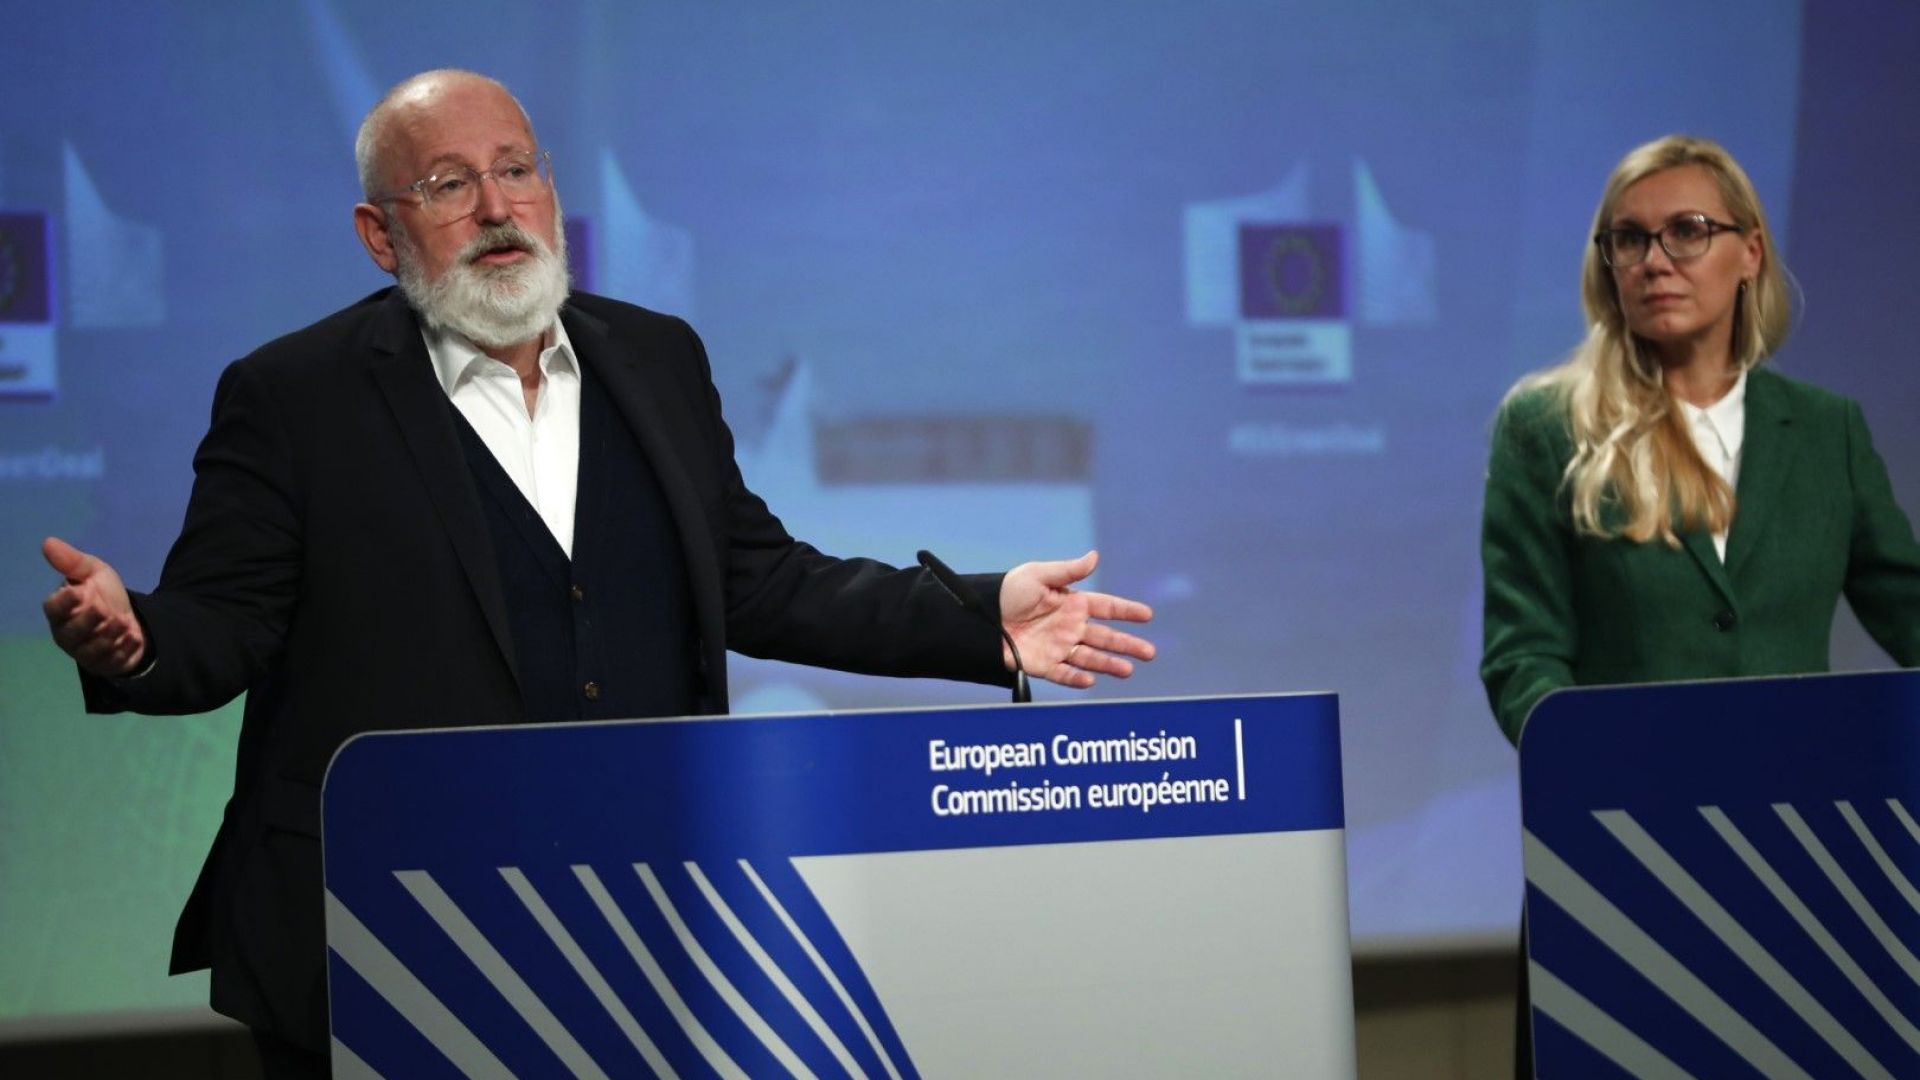 ЕС: Постигнатото споразумение на конференцията КОП 27 не е достатъчно амбициозно